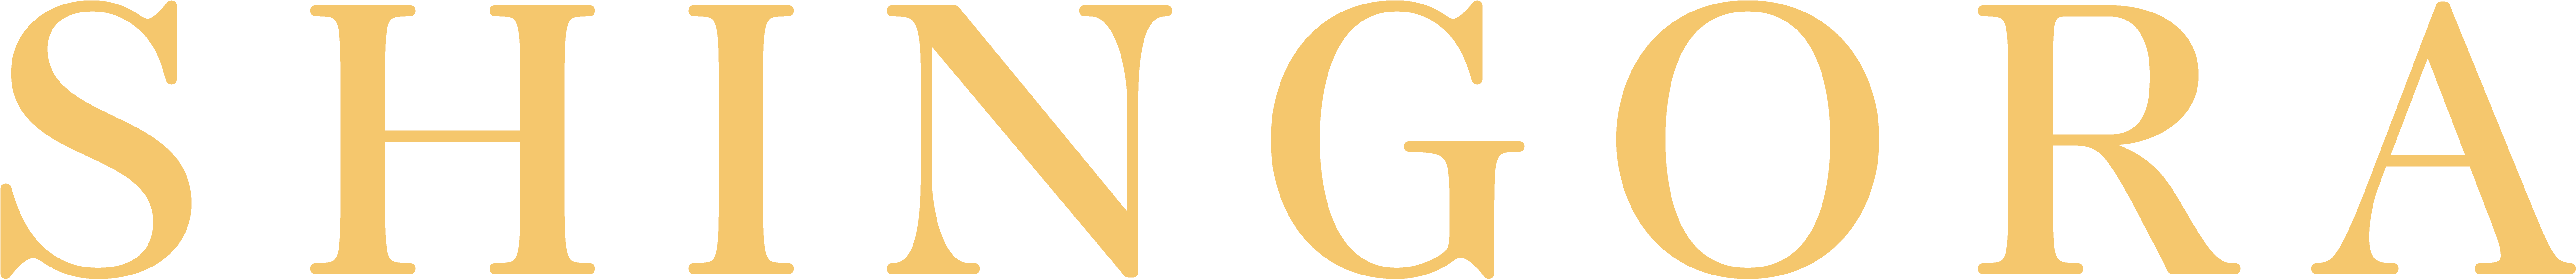 Shingora - Loyola University Maryland Logo Png (8248x1044)